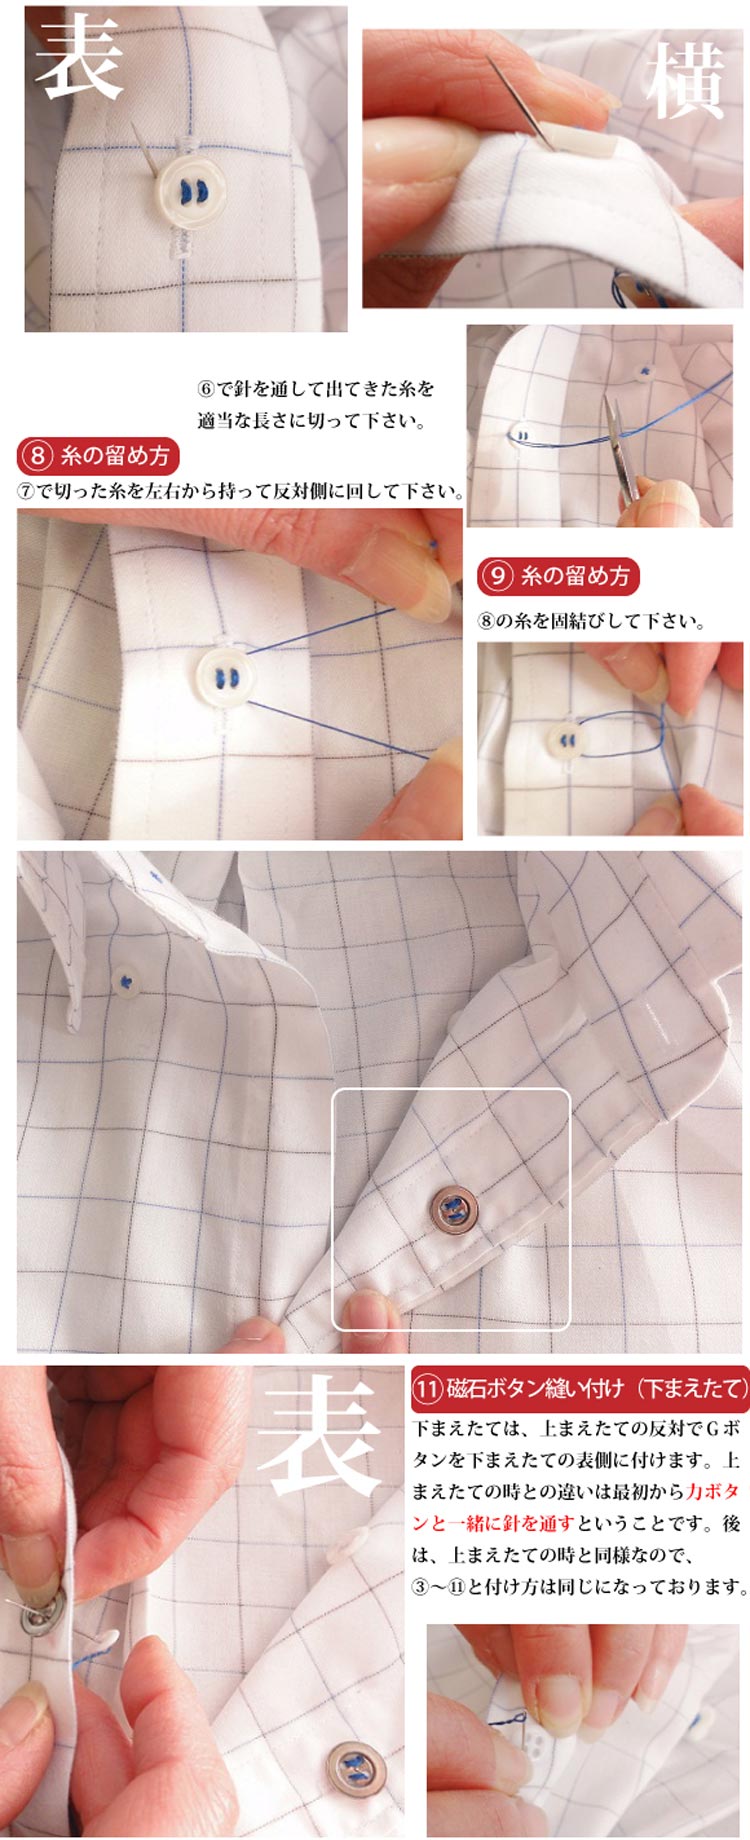 Gボタン縫い付け方法